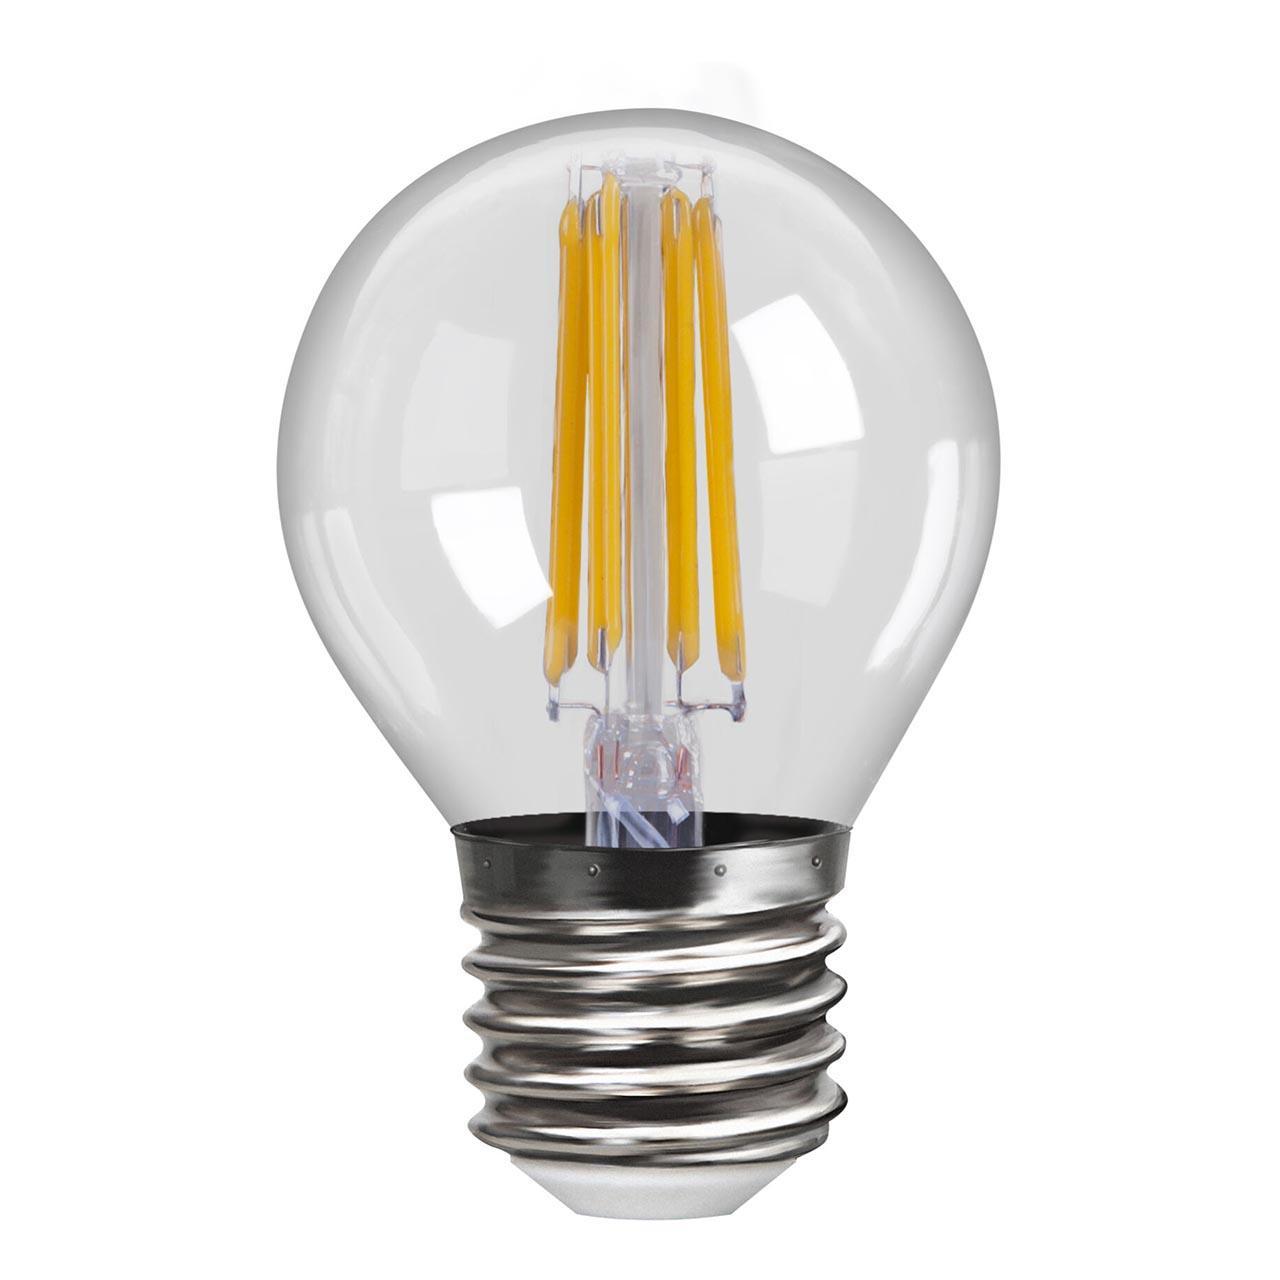 Что лучше — светодиодная или энергосберегающая лампа